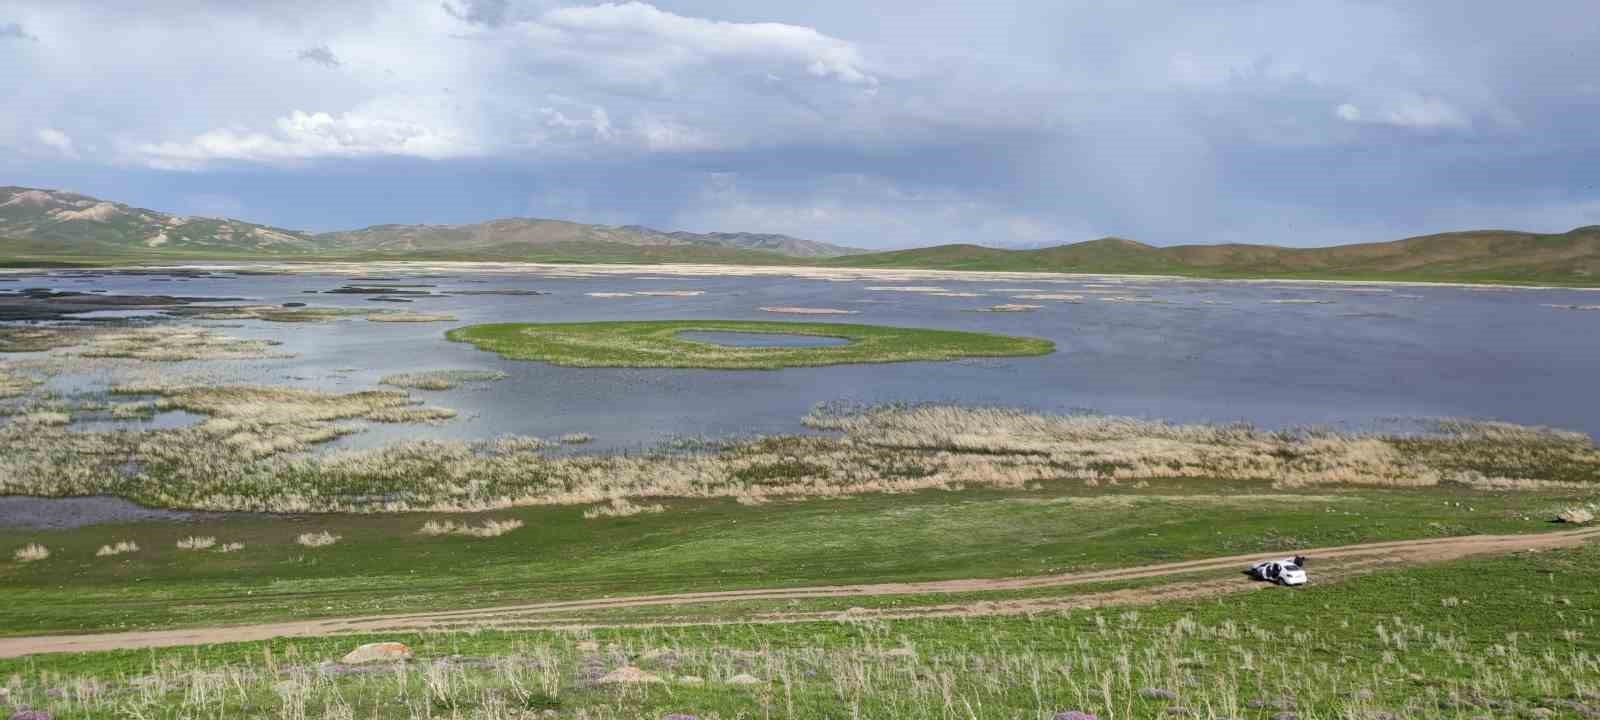 2 bin 800 yıllık Keşiş Gölü kurumak üzere